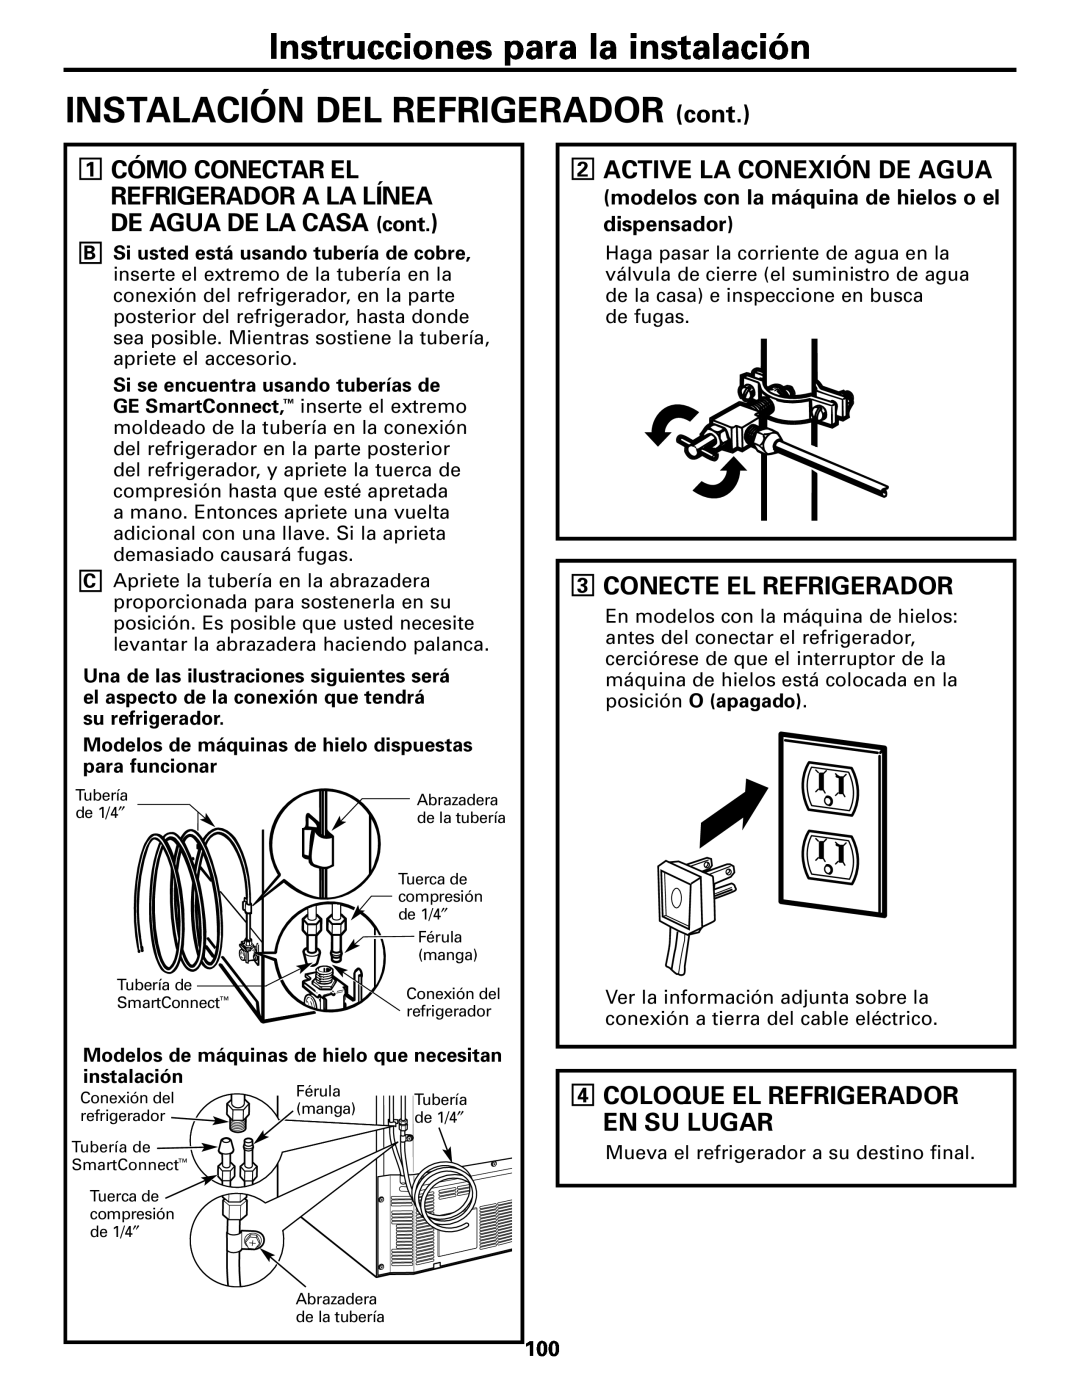 GE Monogram 22, 20 Instrucciones para la instalación INSTALACIÓN DEL REFRIGERADOR cont, Active La Conexión De Agua 